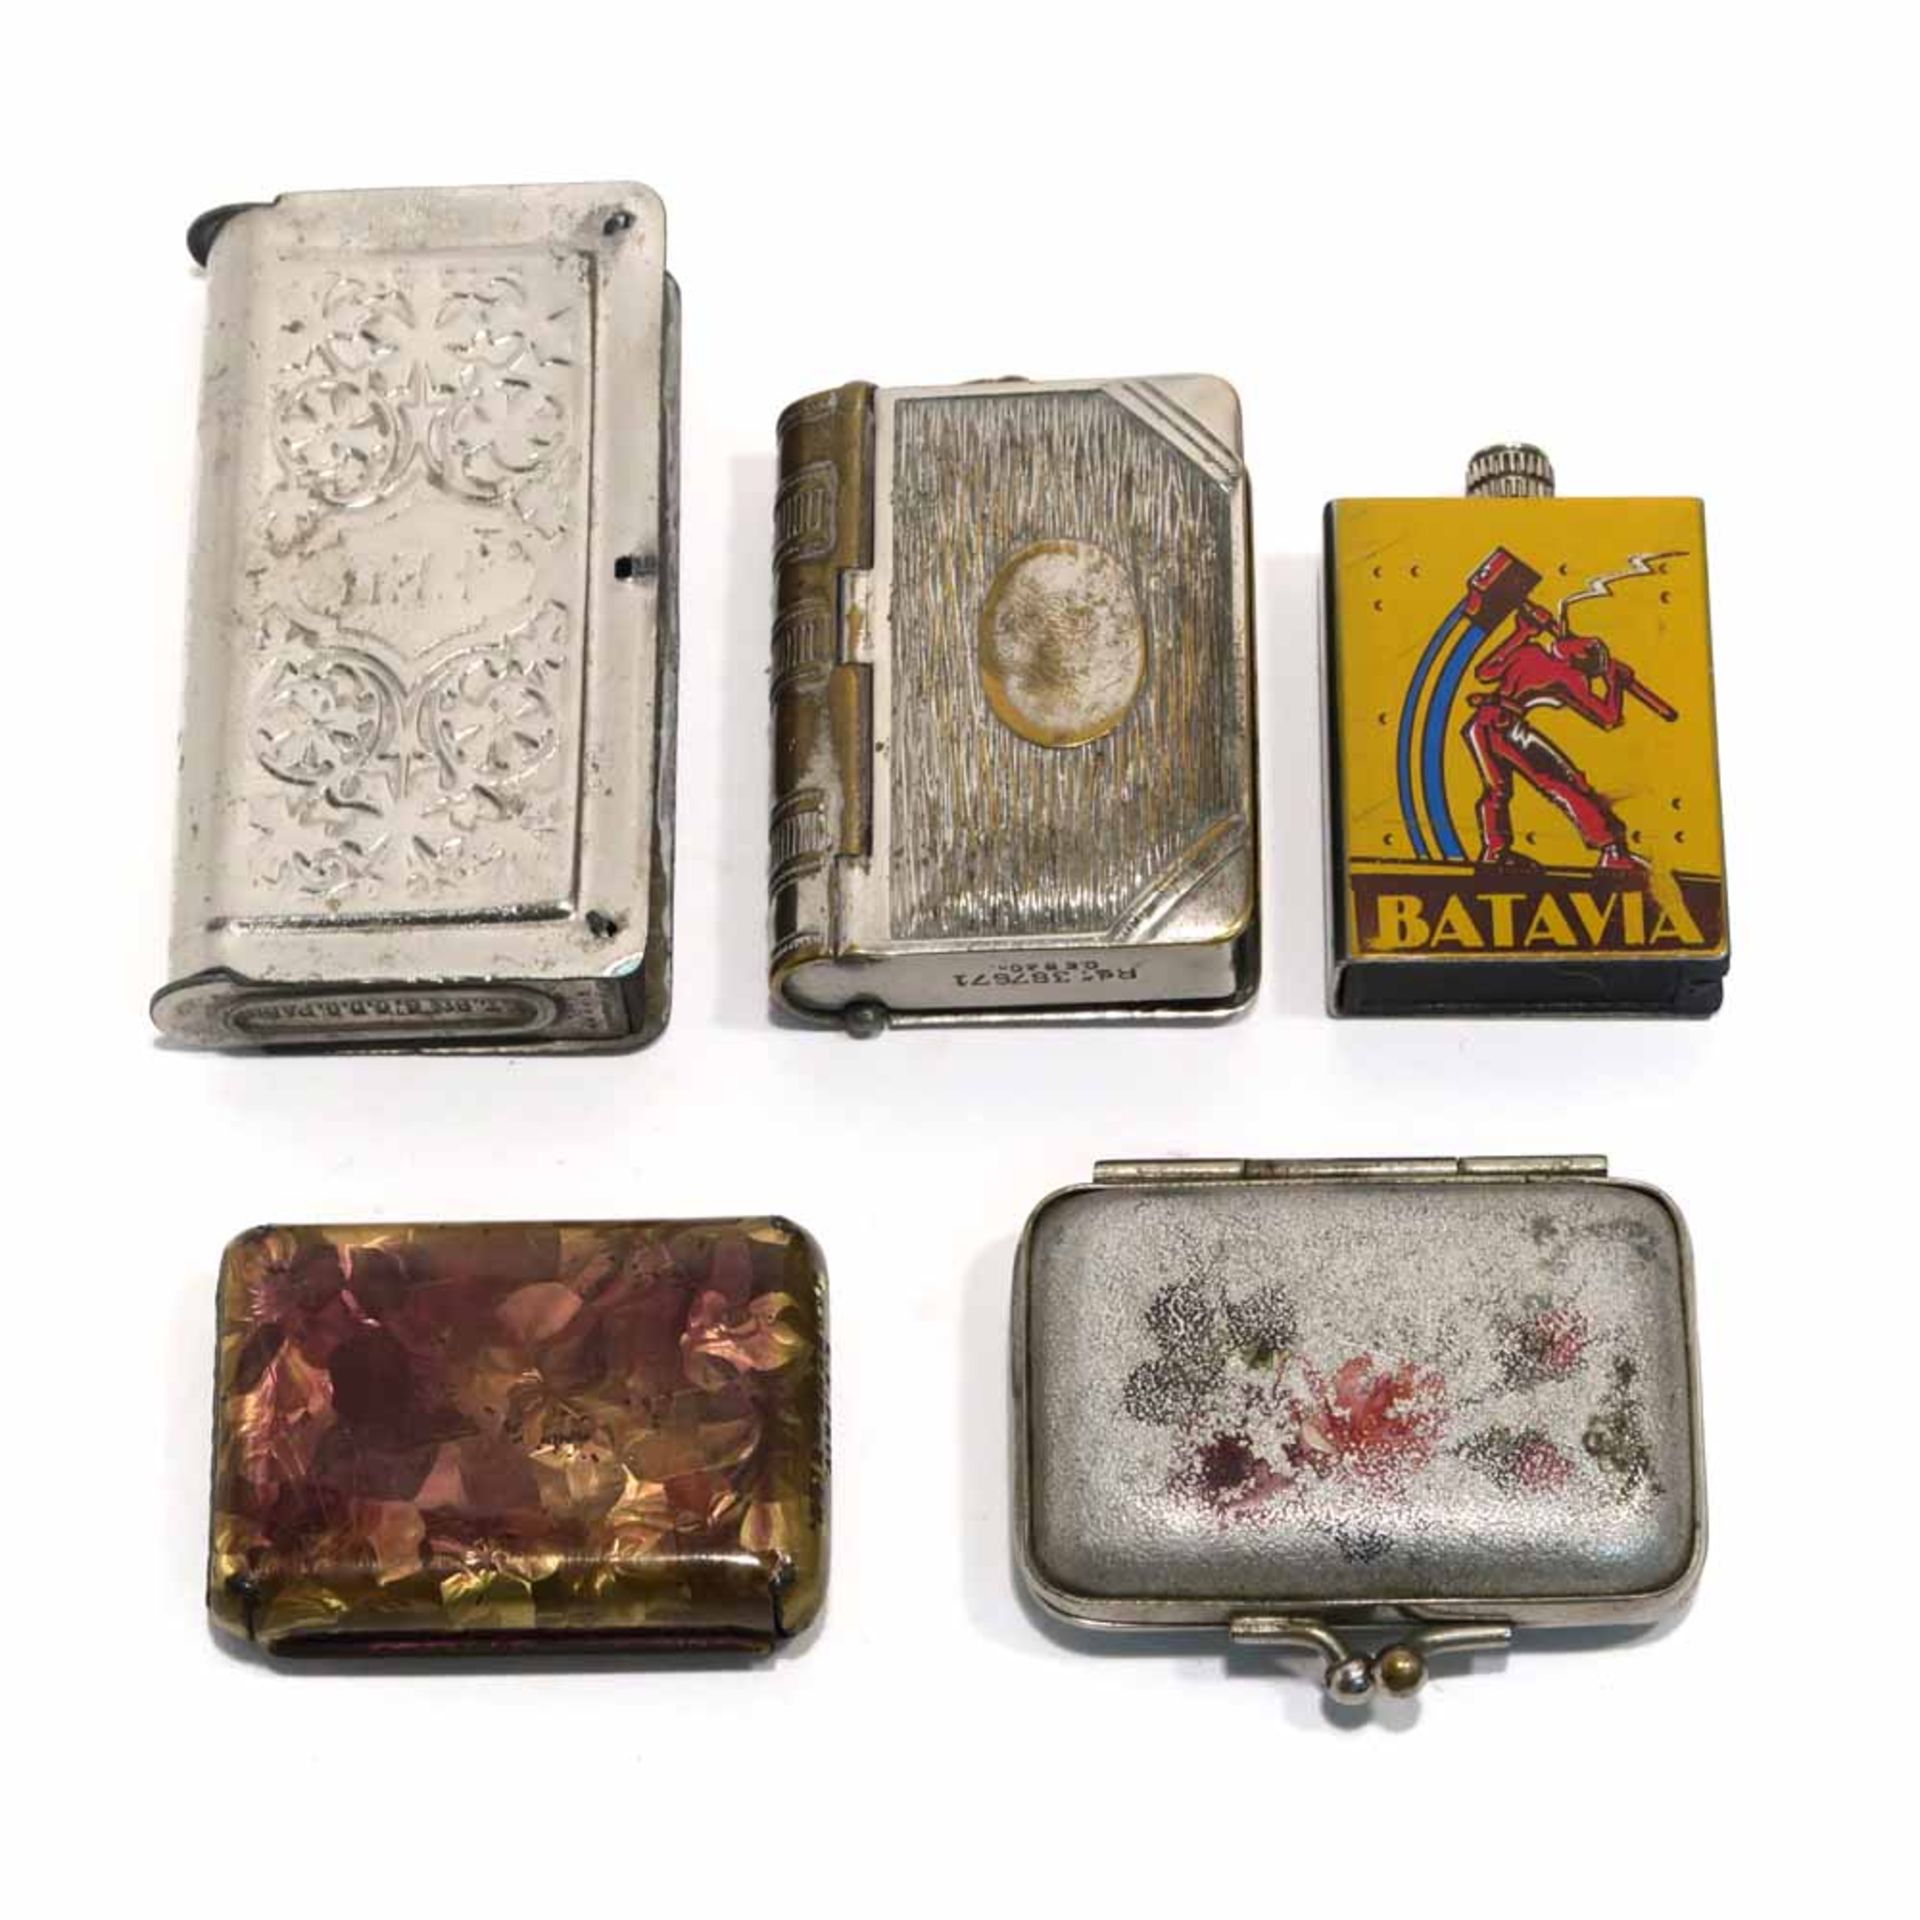 Vier StreichholzdosenFour vesta cases (match safes)Um 1900 und späterVersch. Materialien, Formen und